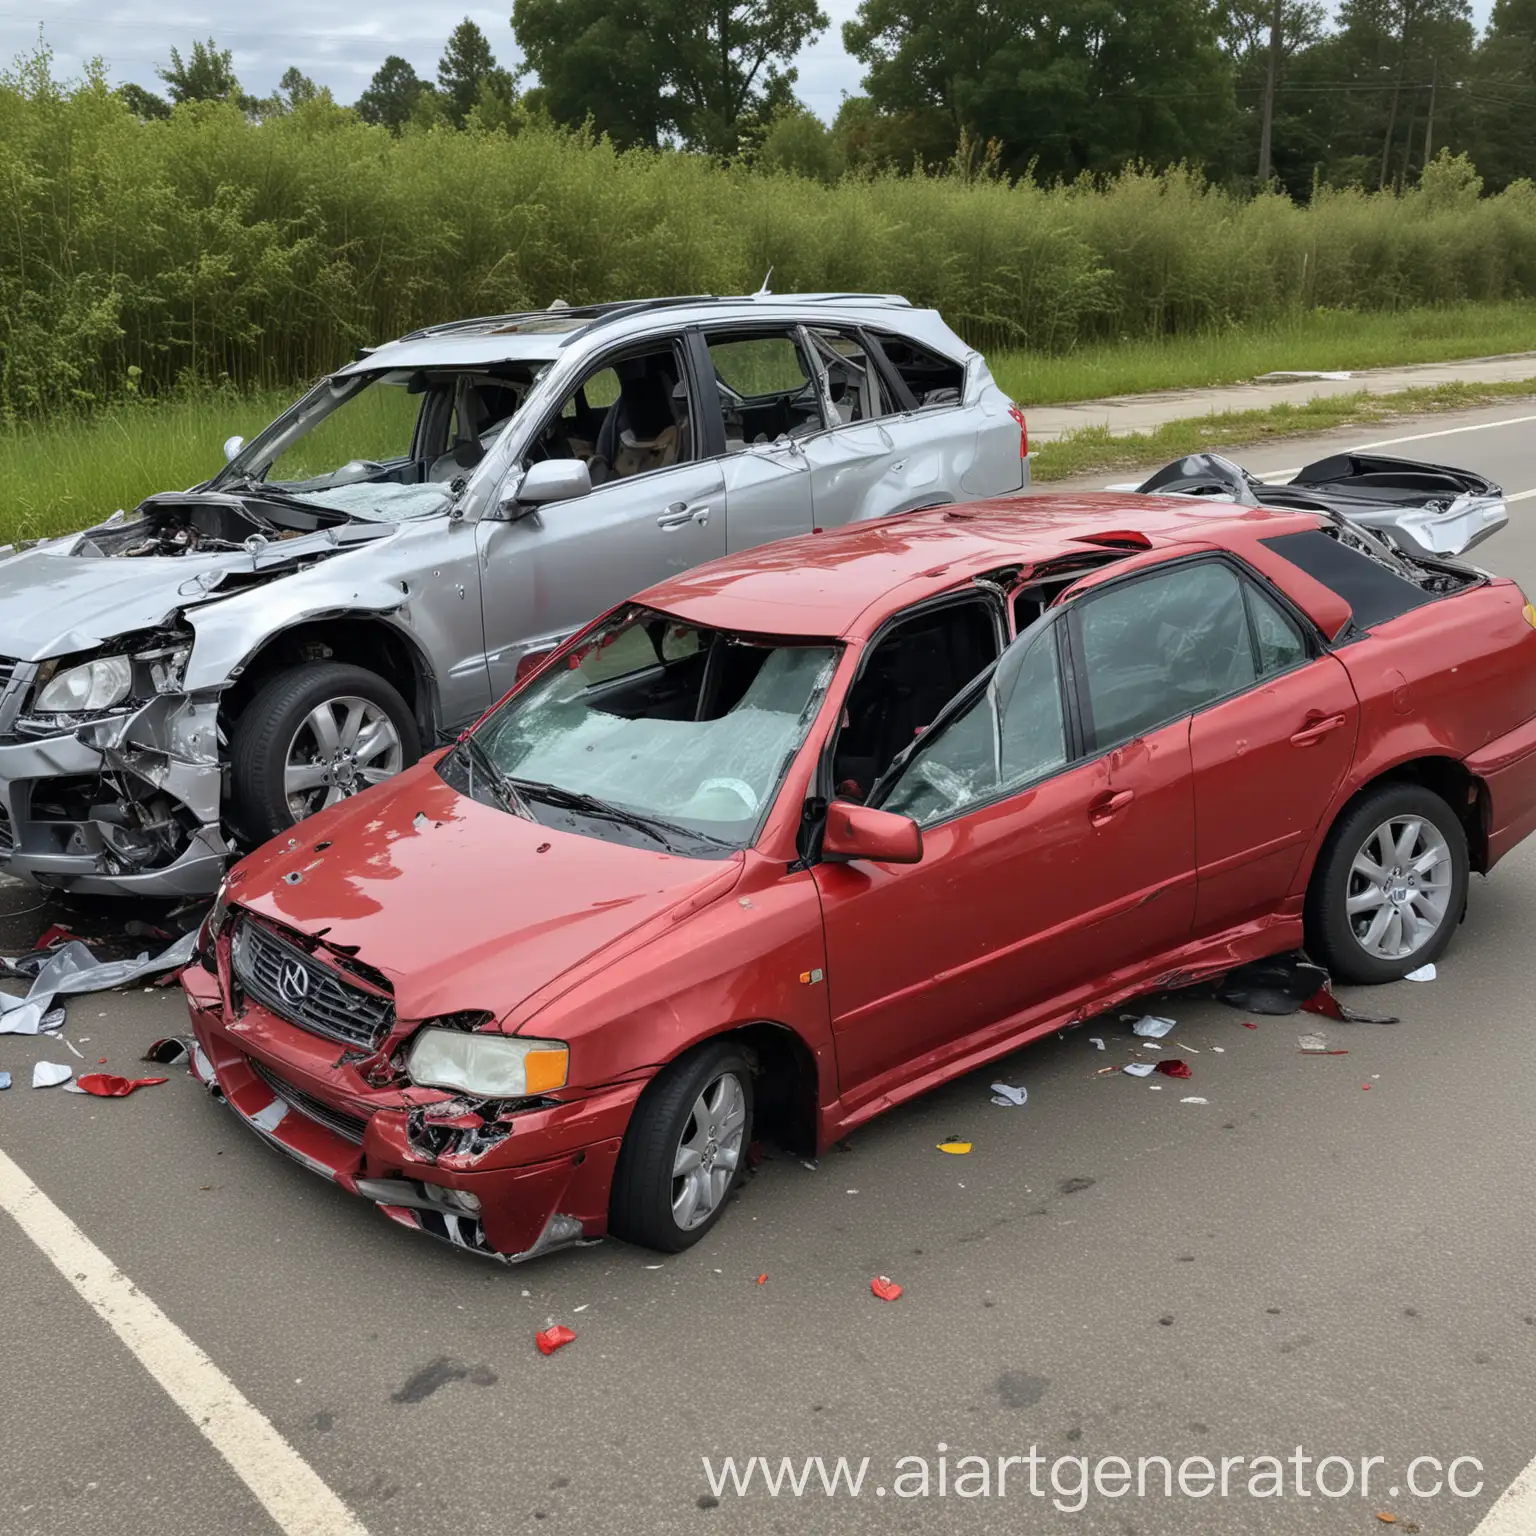 Авария: две сильно поврежденные машины: серебристый седан с разбитой передней частью и красный внедорожник врезался в бок седана. Оба автомобиля помяты, стекла разбиты.
